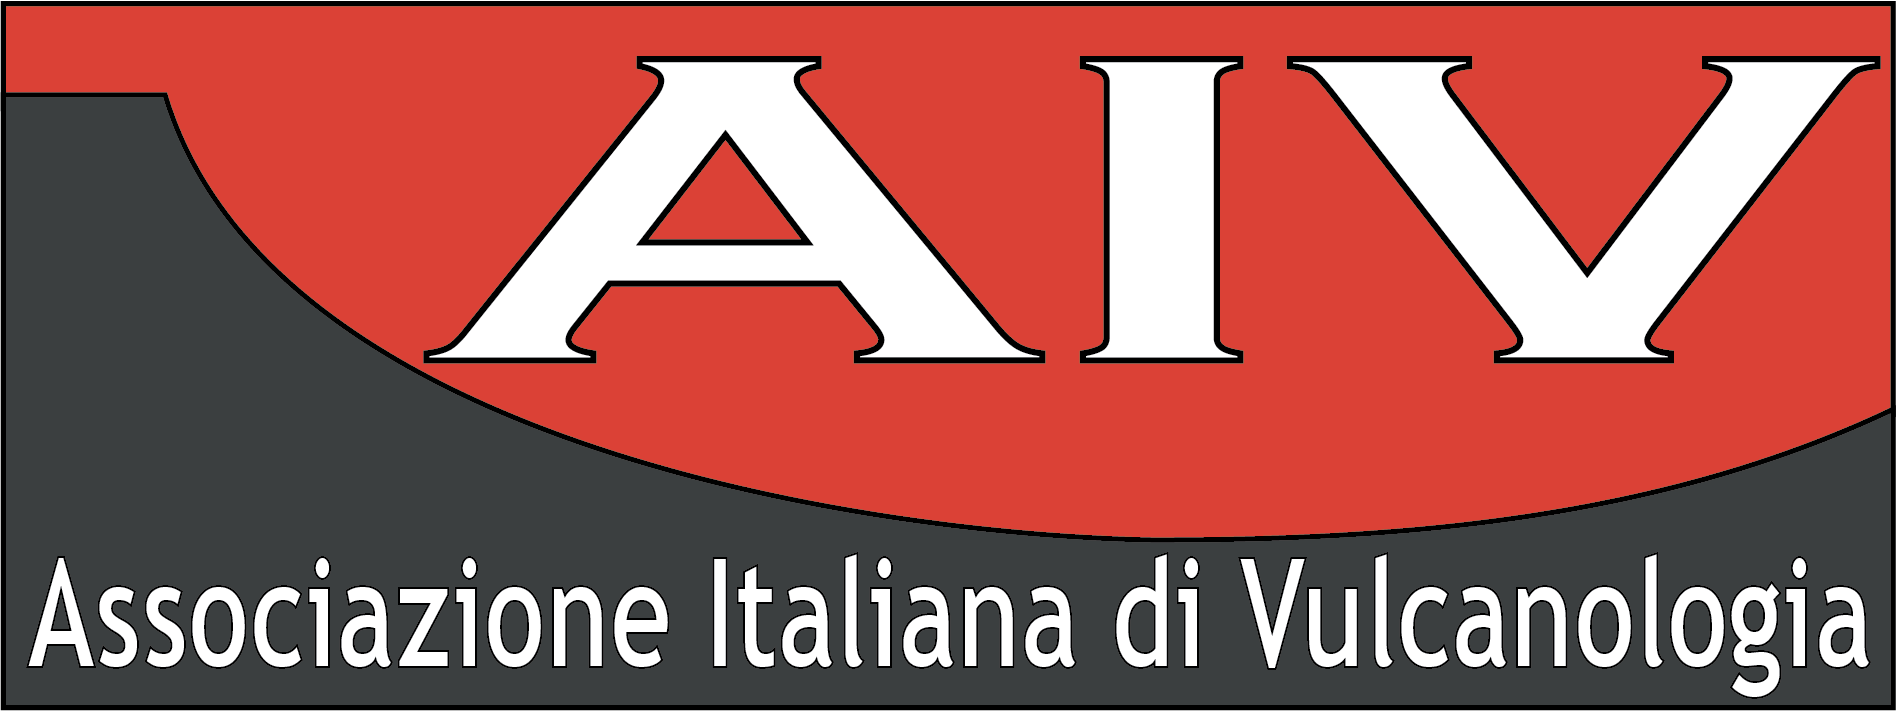 Aivulc logo